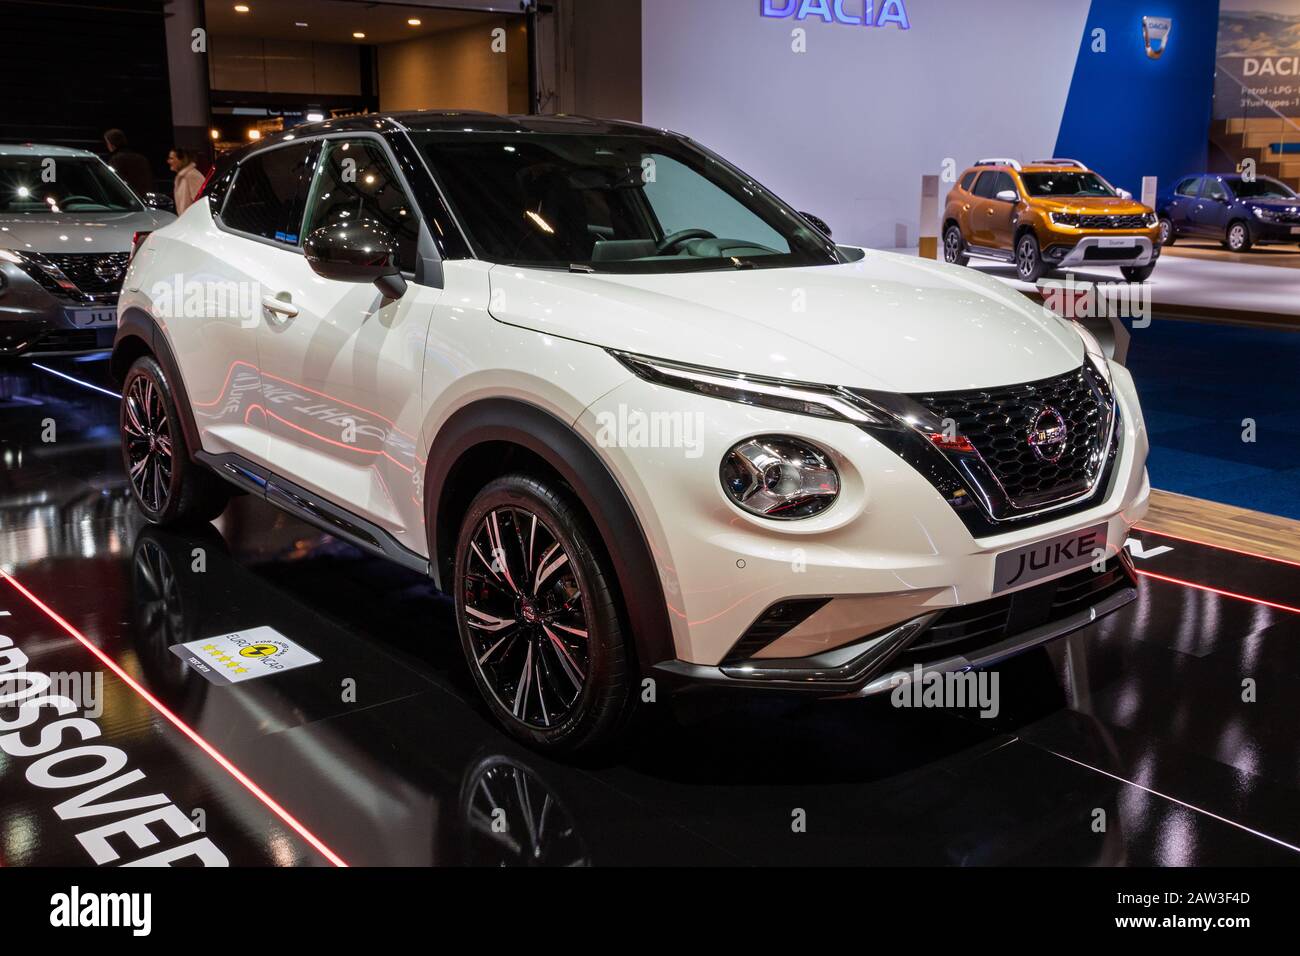 Bruxelles - 9 JANVIER 2020: Nouveau modèle de voiture de sport croisé Nissan Juke présenté au salon automobile Bruxelles Autosalon 2020. Banque D'Images